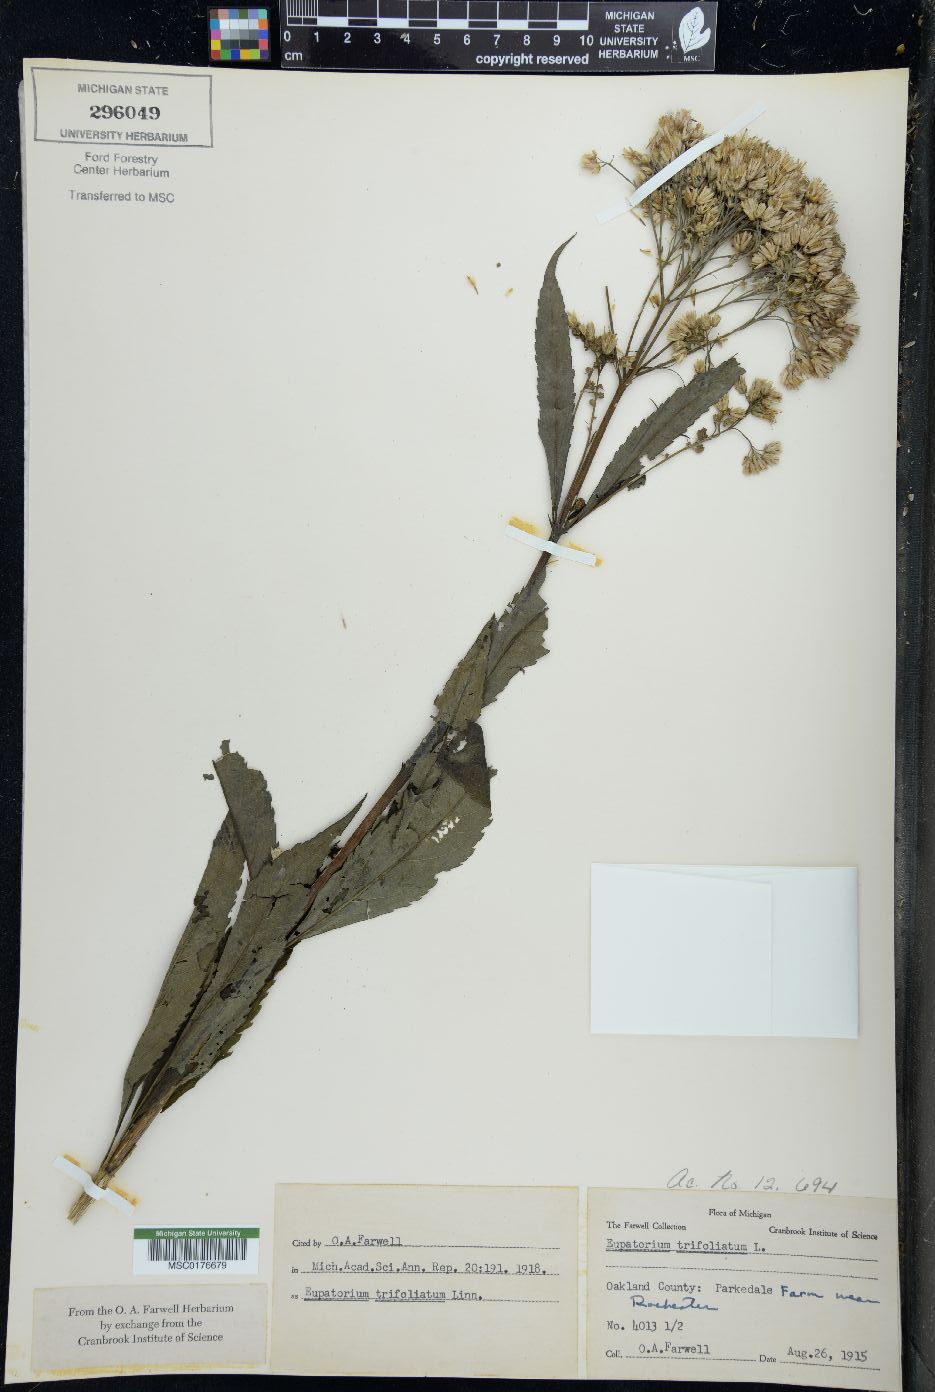 Eupatorium trifoliatum image